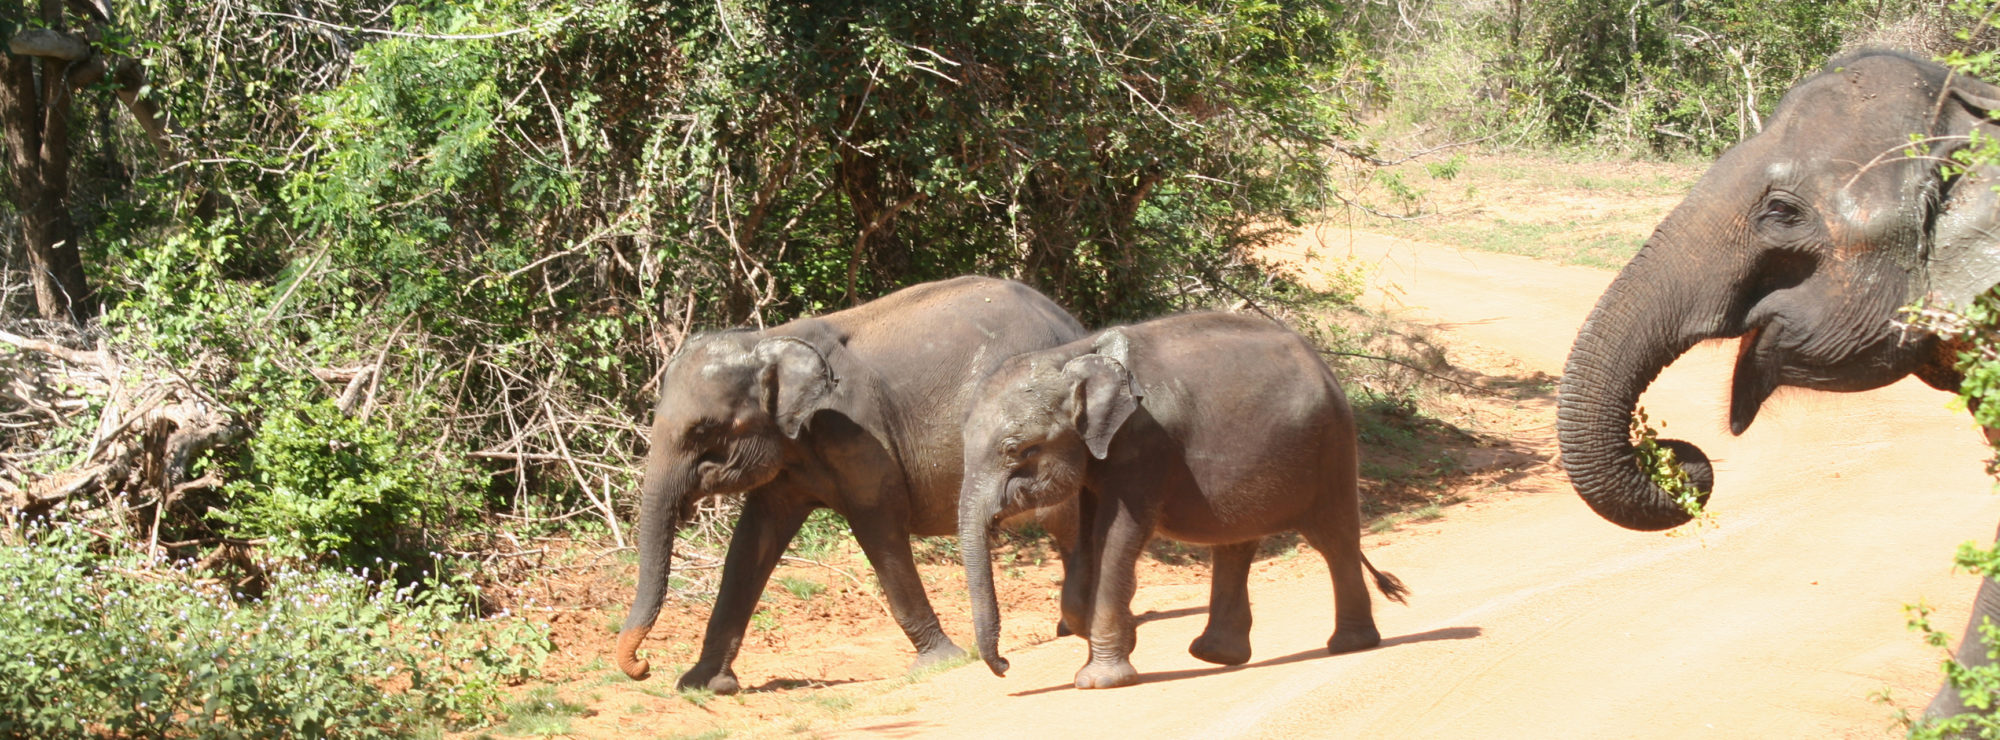 TDS Voyage - Tourisme équitable et solidaire au Sri Lanka